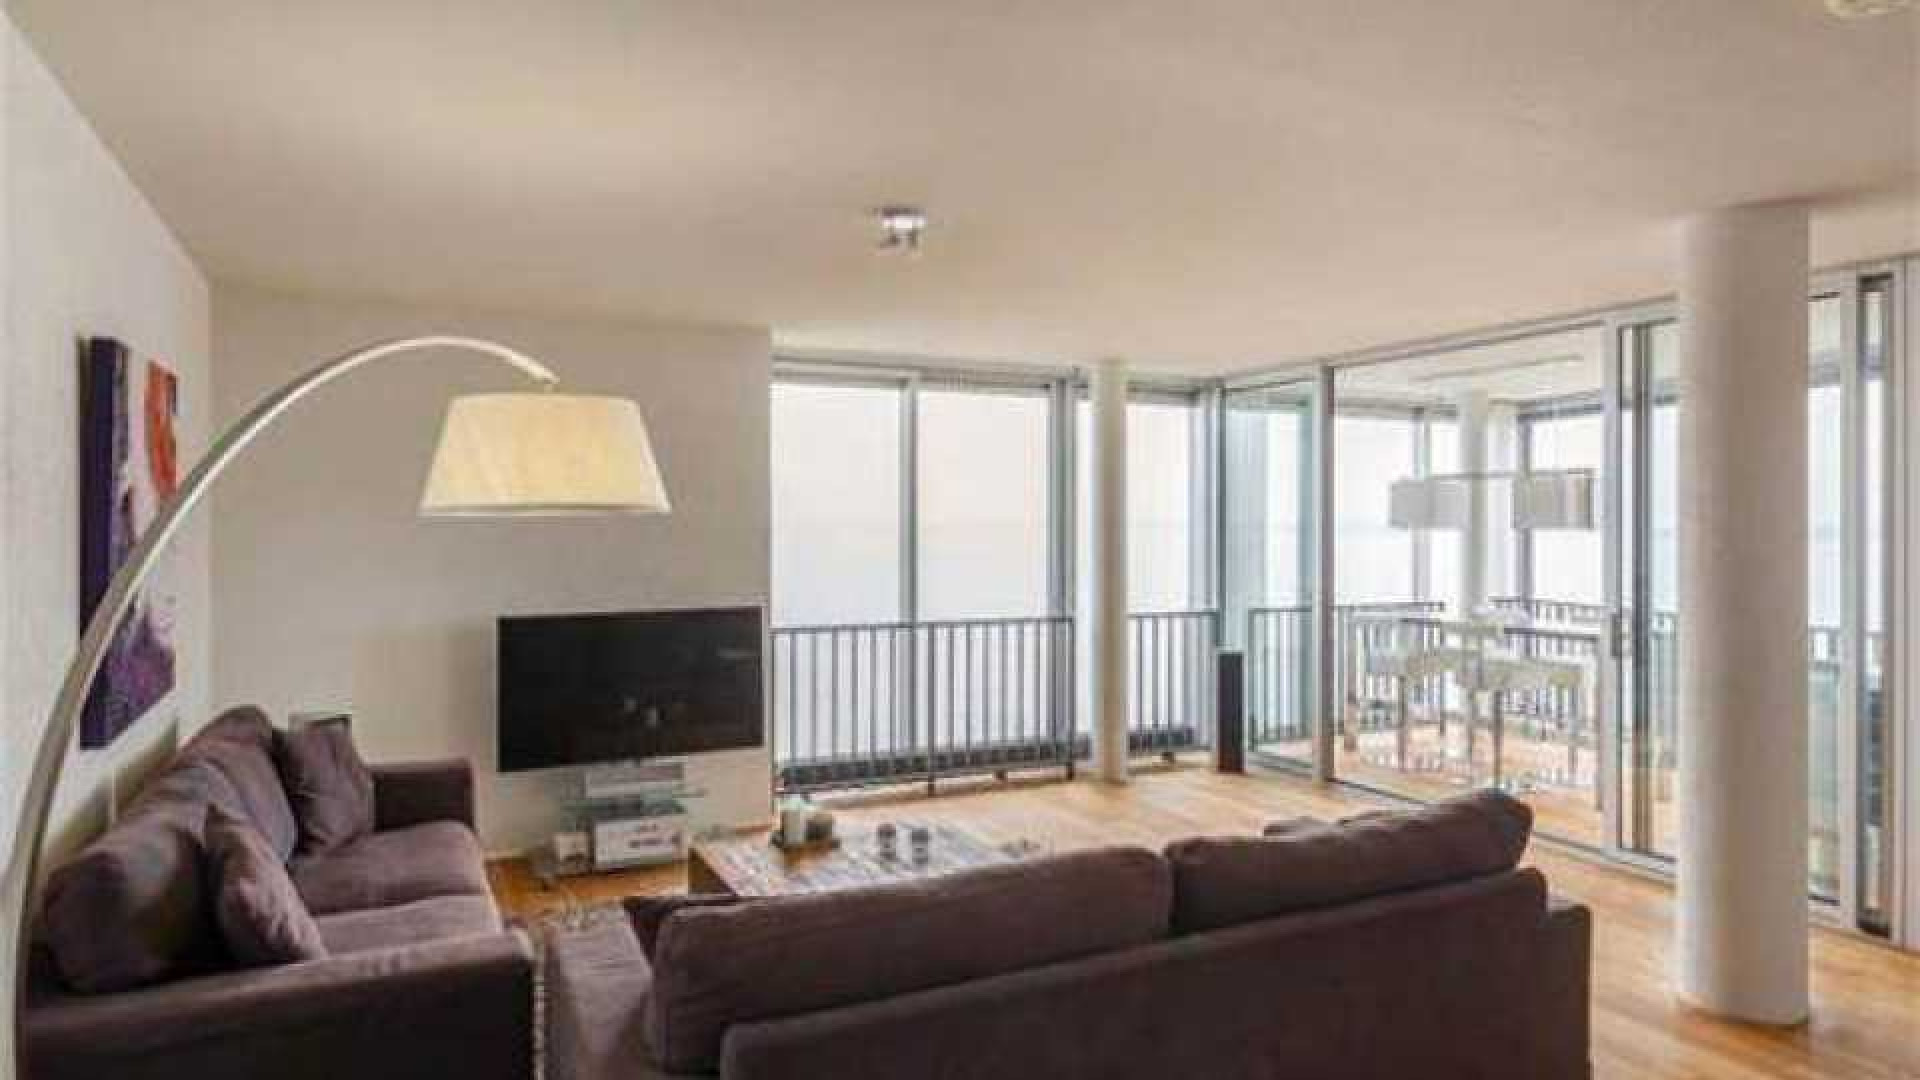 Thomas Berge ruilt riante villa met botenhuis in voor appartement. 2